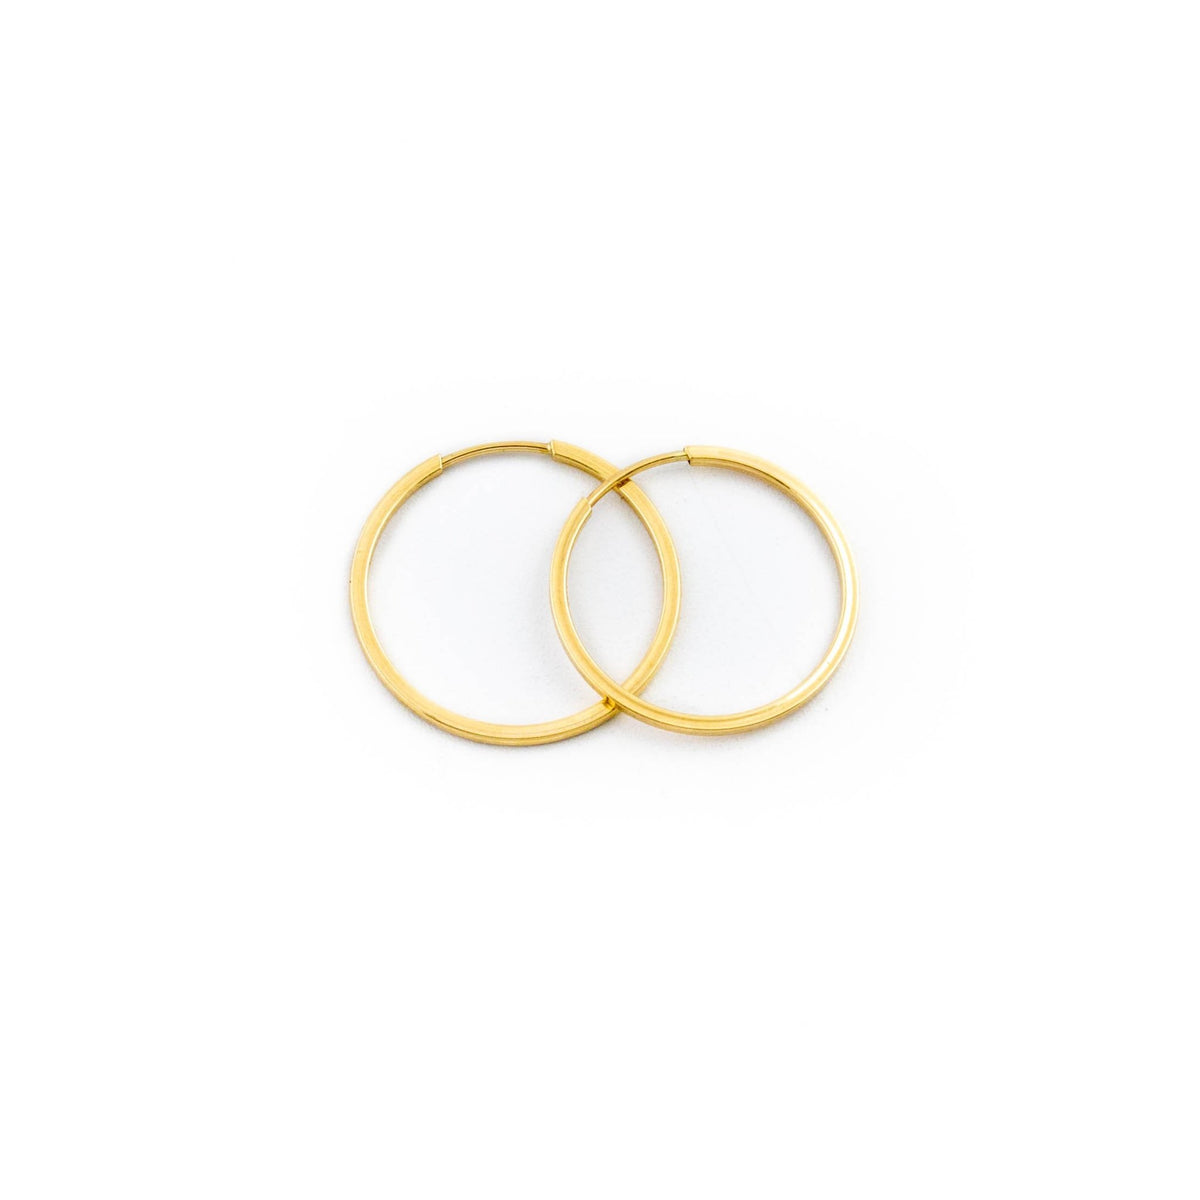 Small Gold Hoop Earrings - Kingdom Jewelry